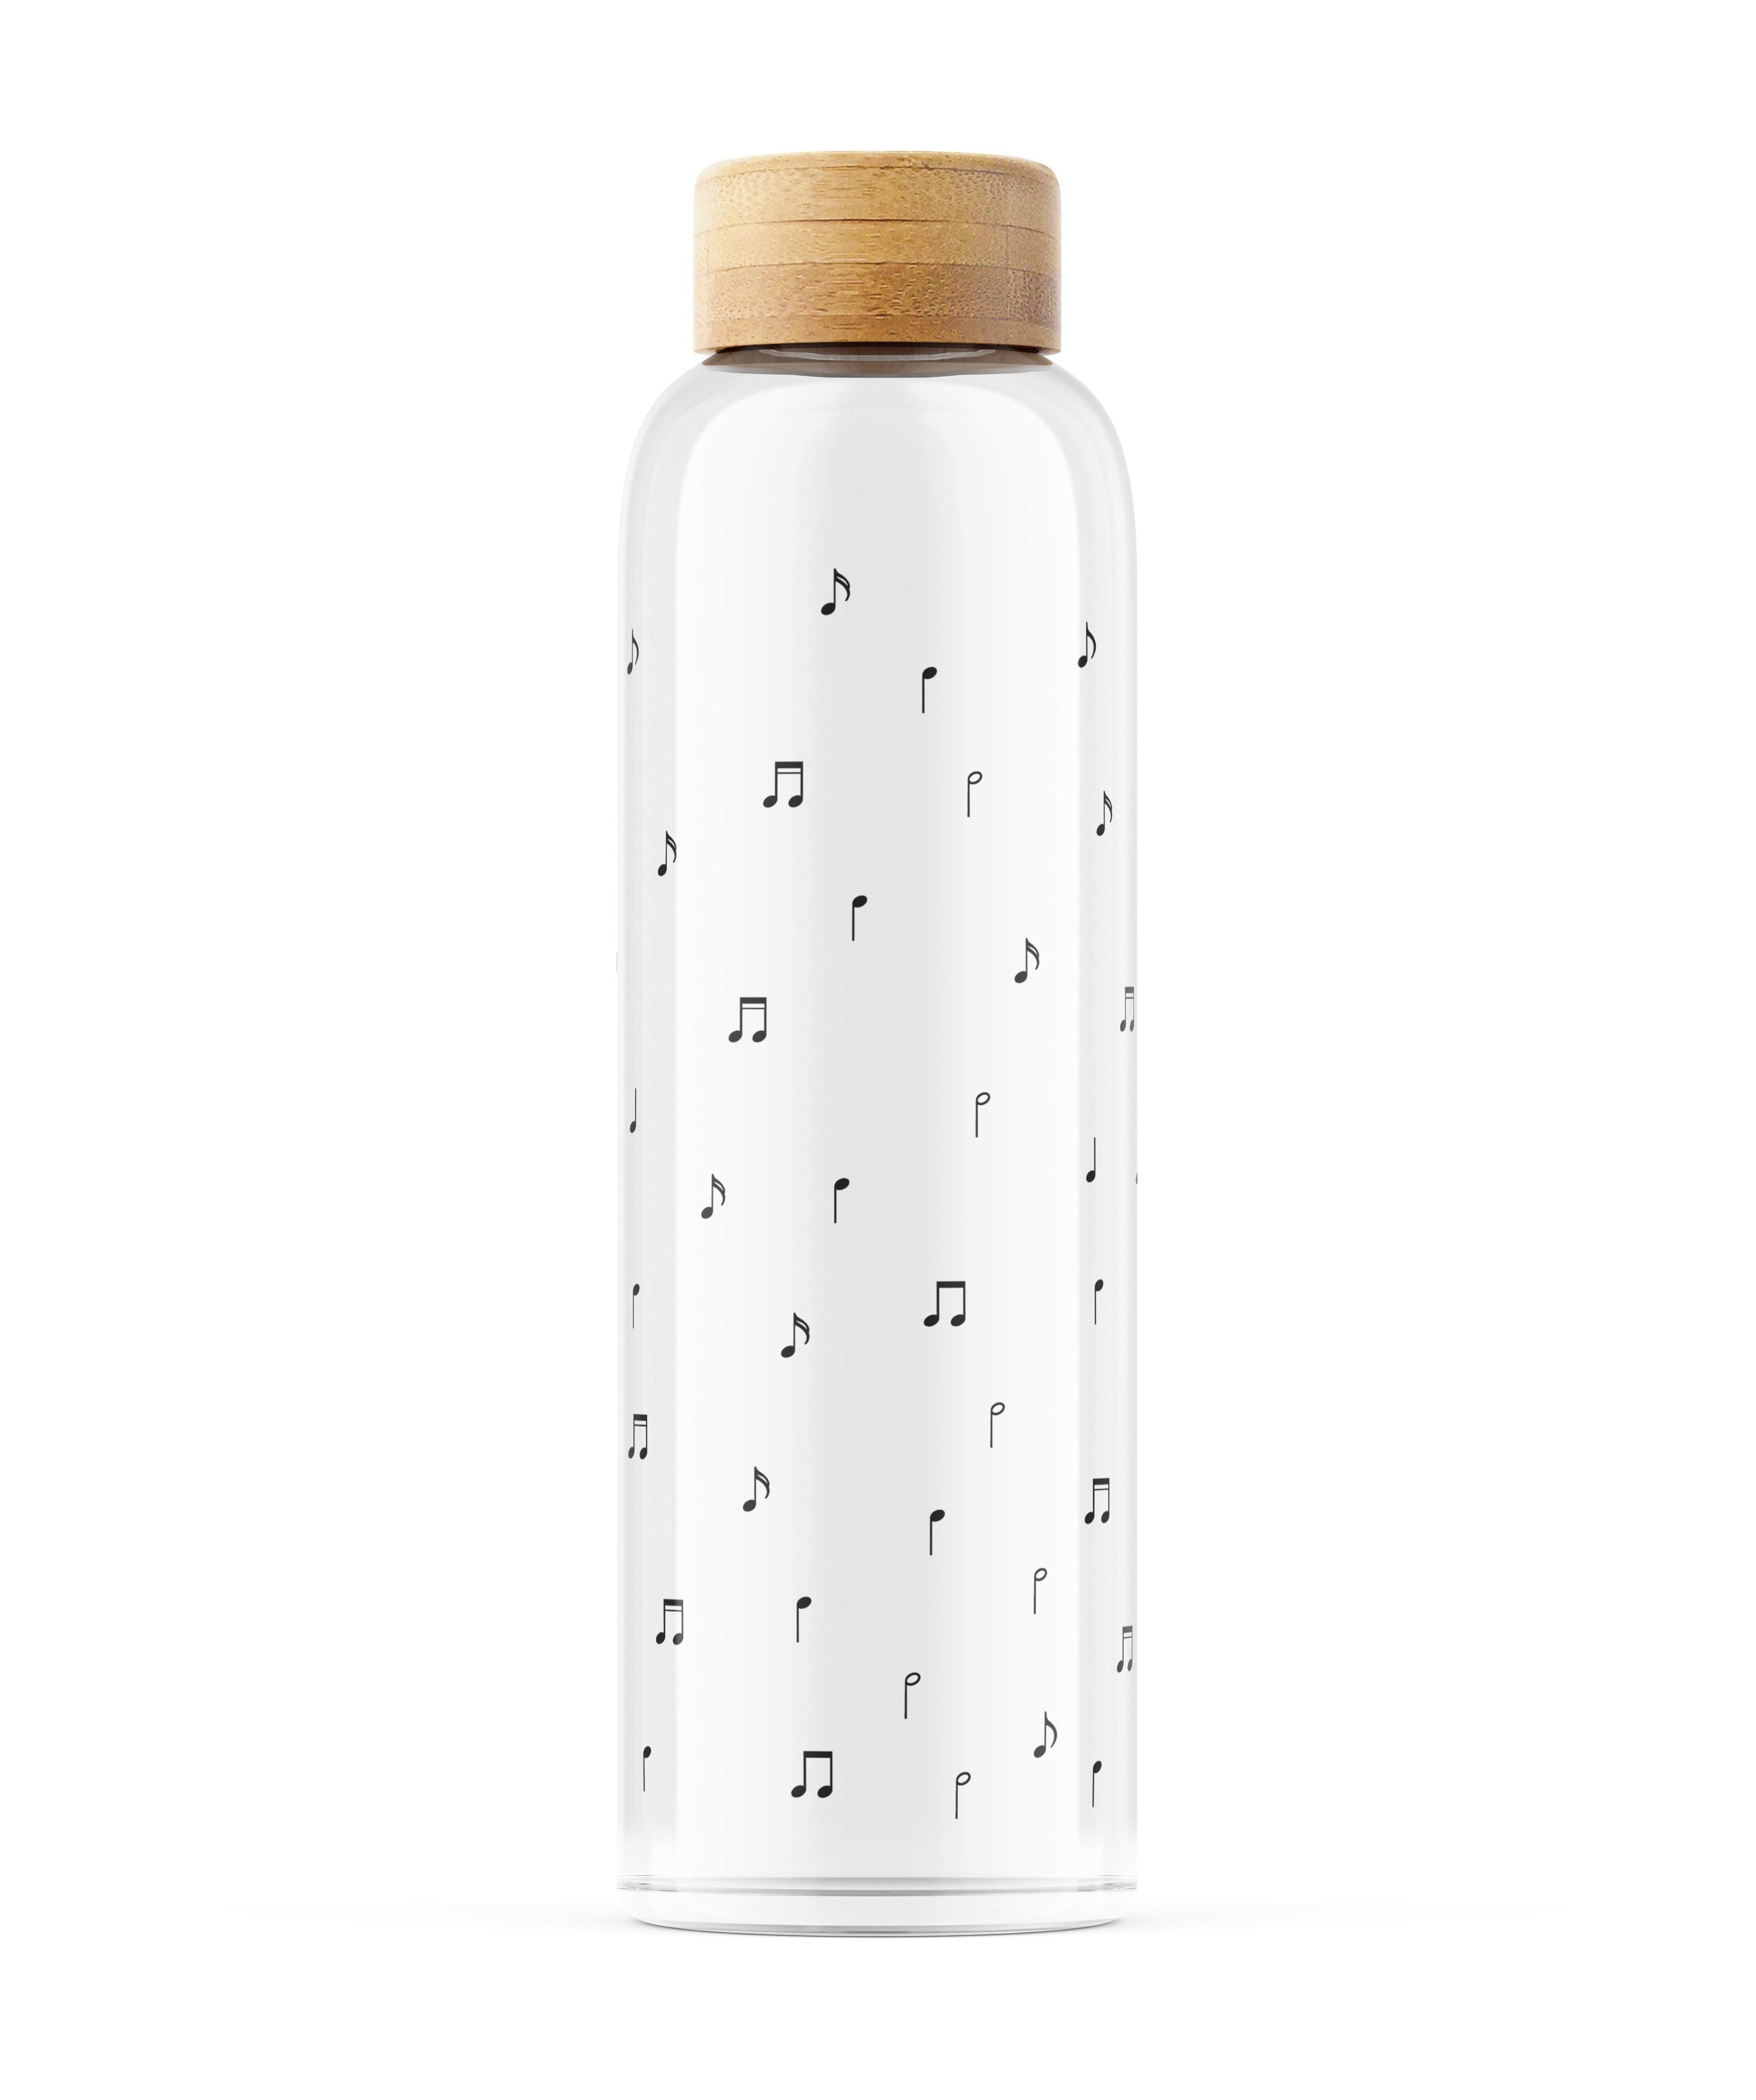 Einzigartige Glasflasche mit Violinschlüssel und Noten